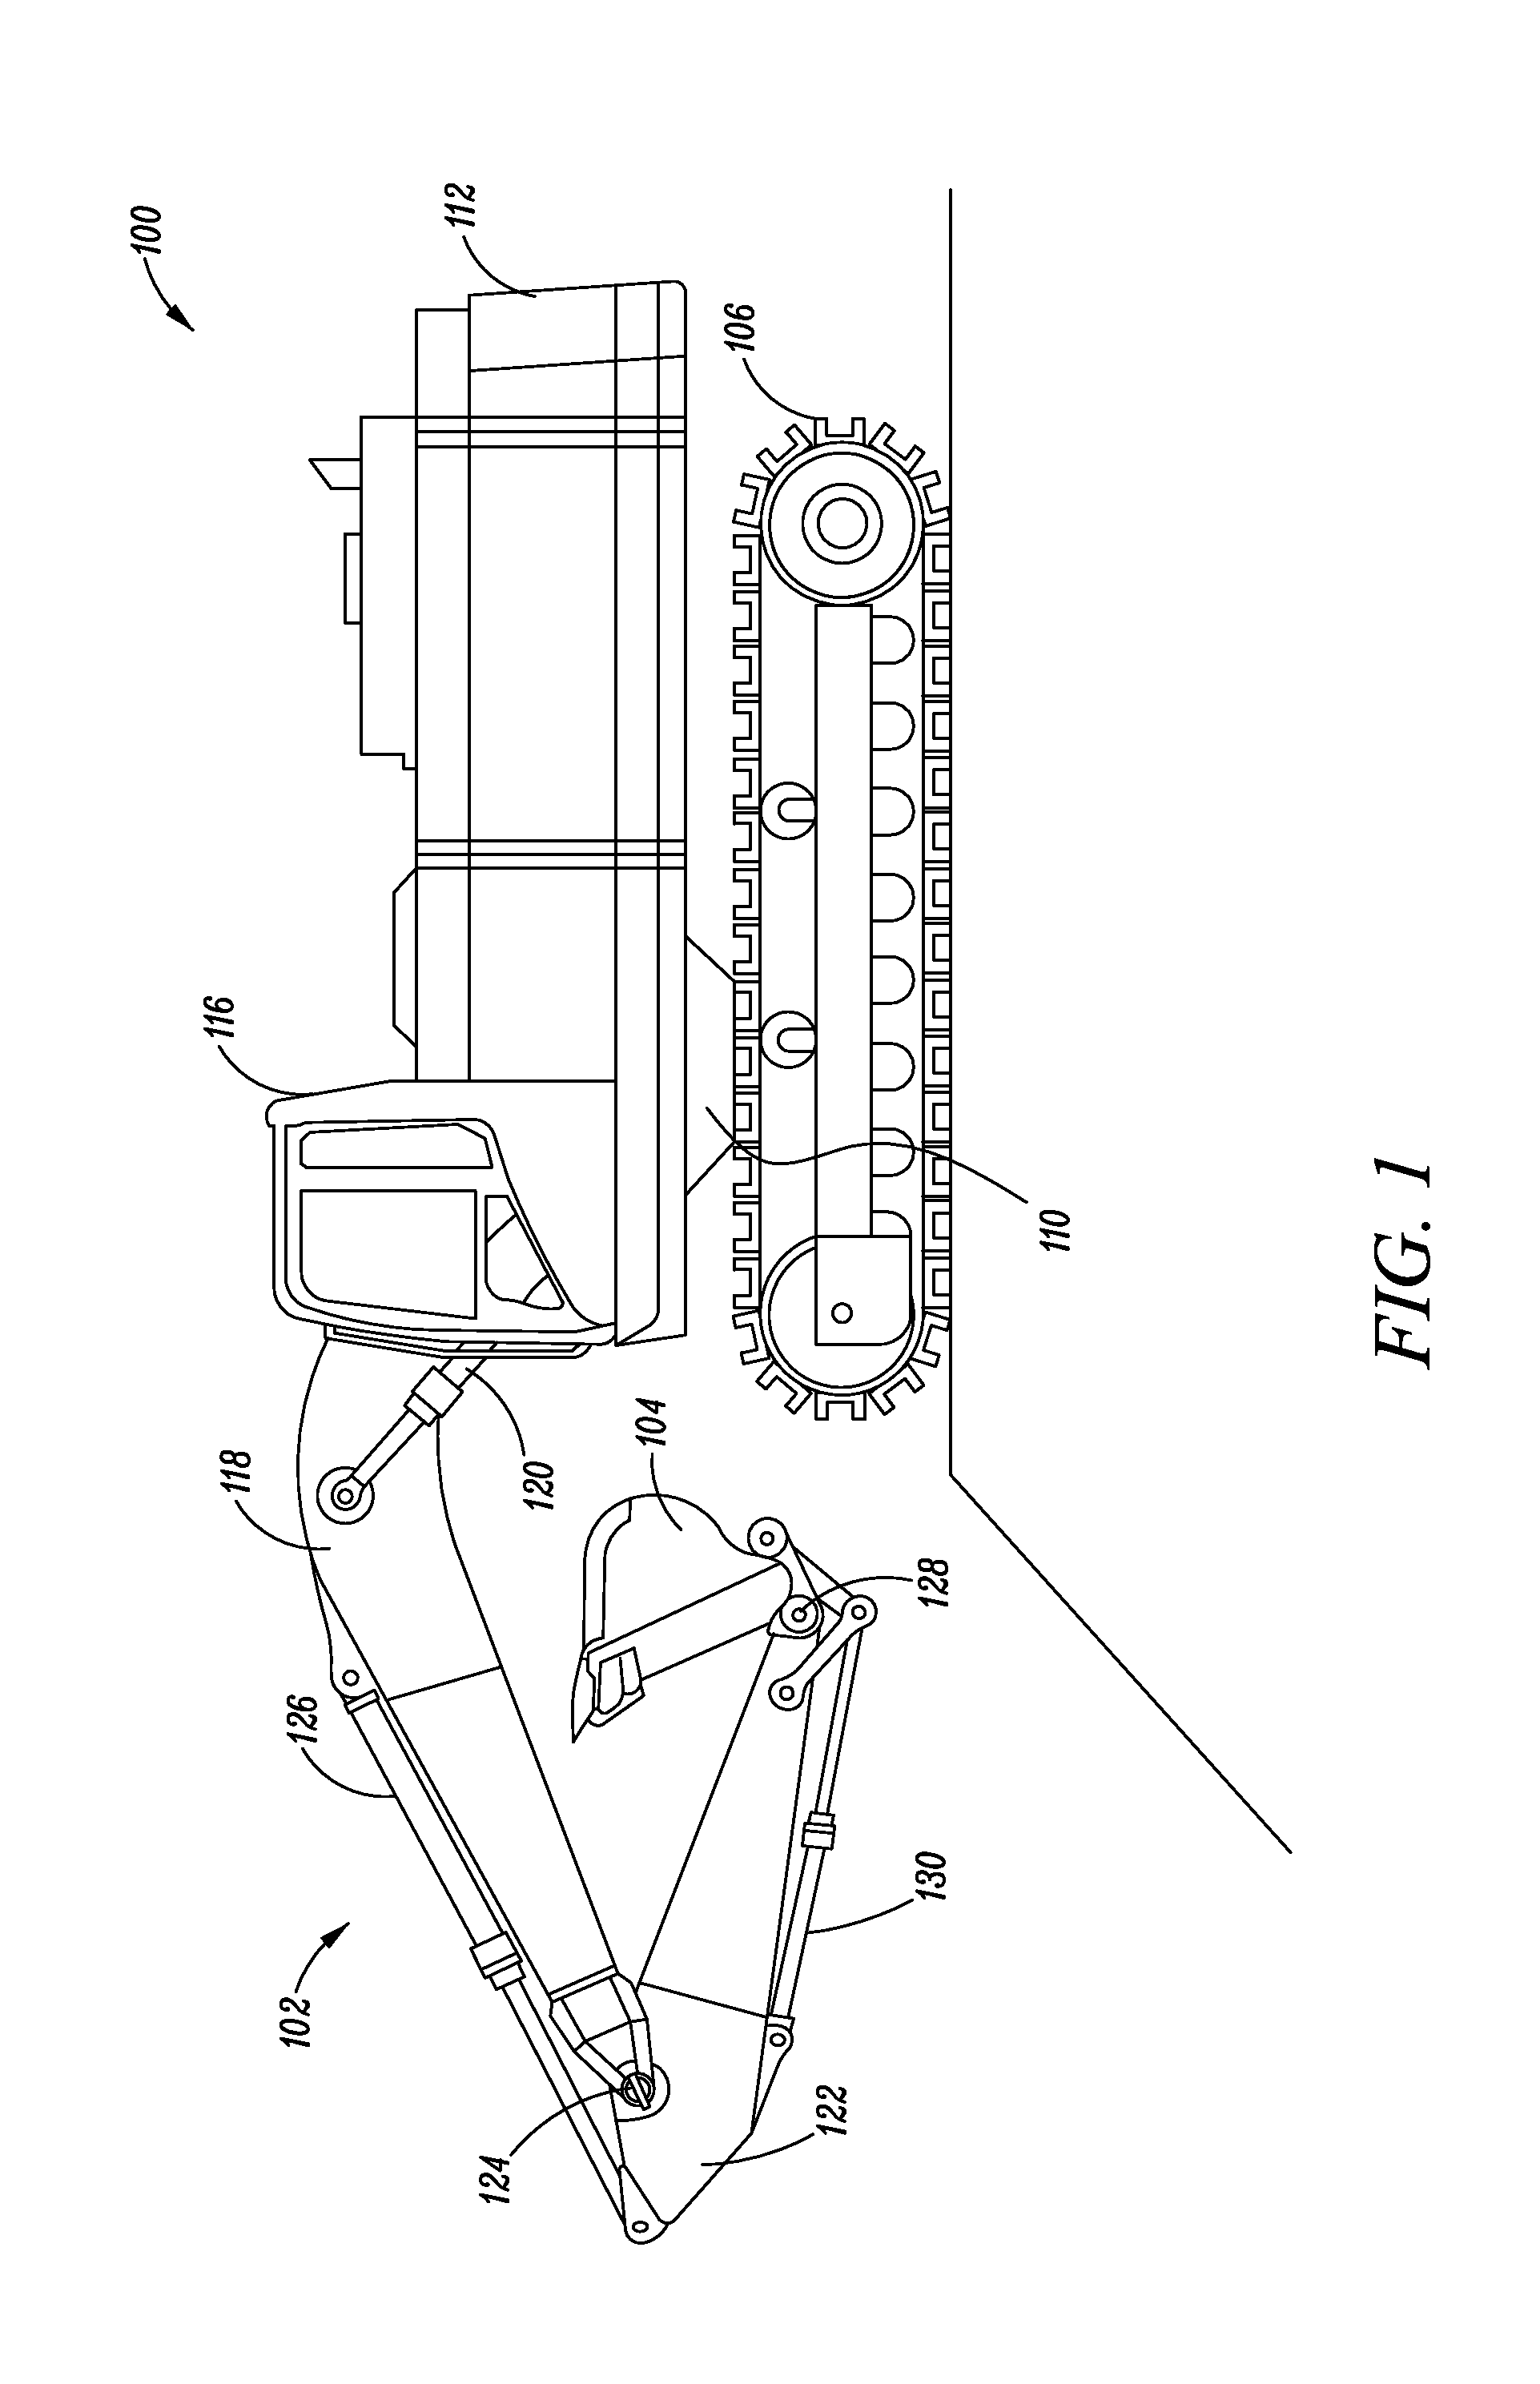 Hydraulic system for machine